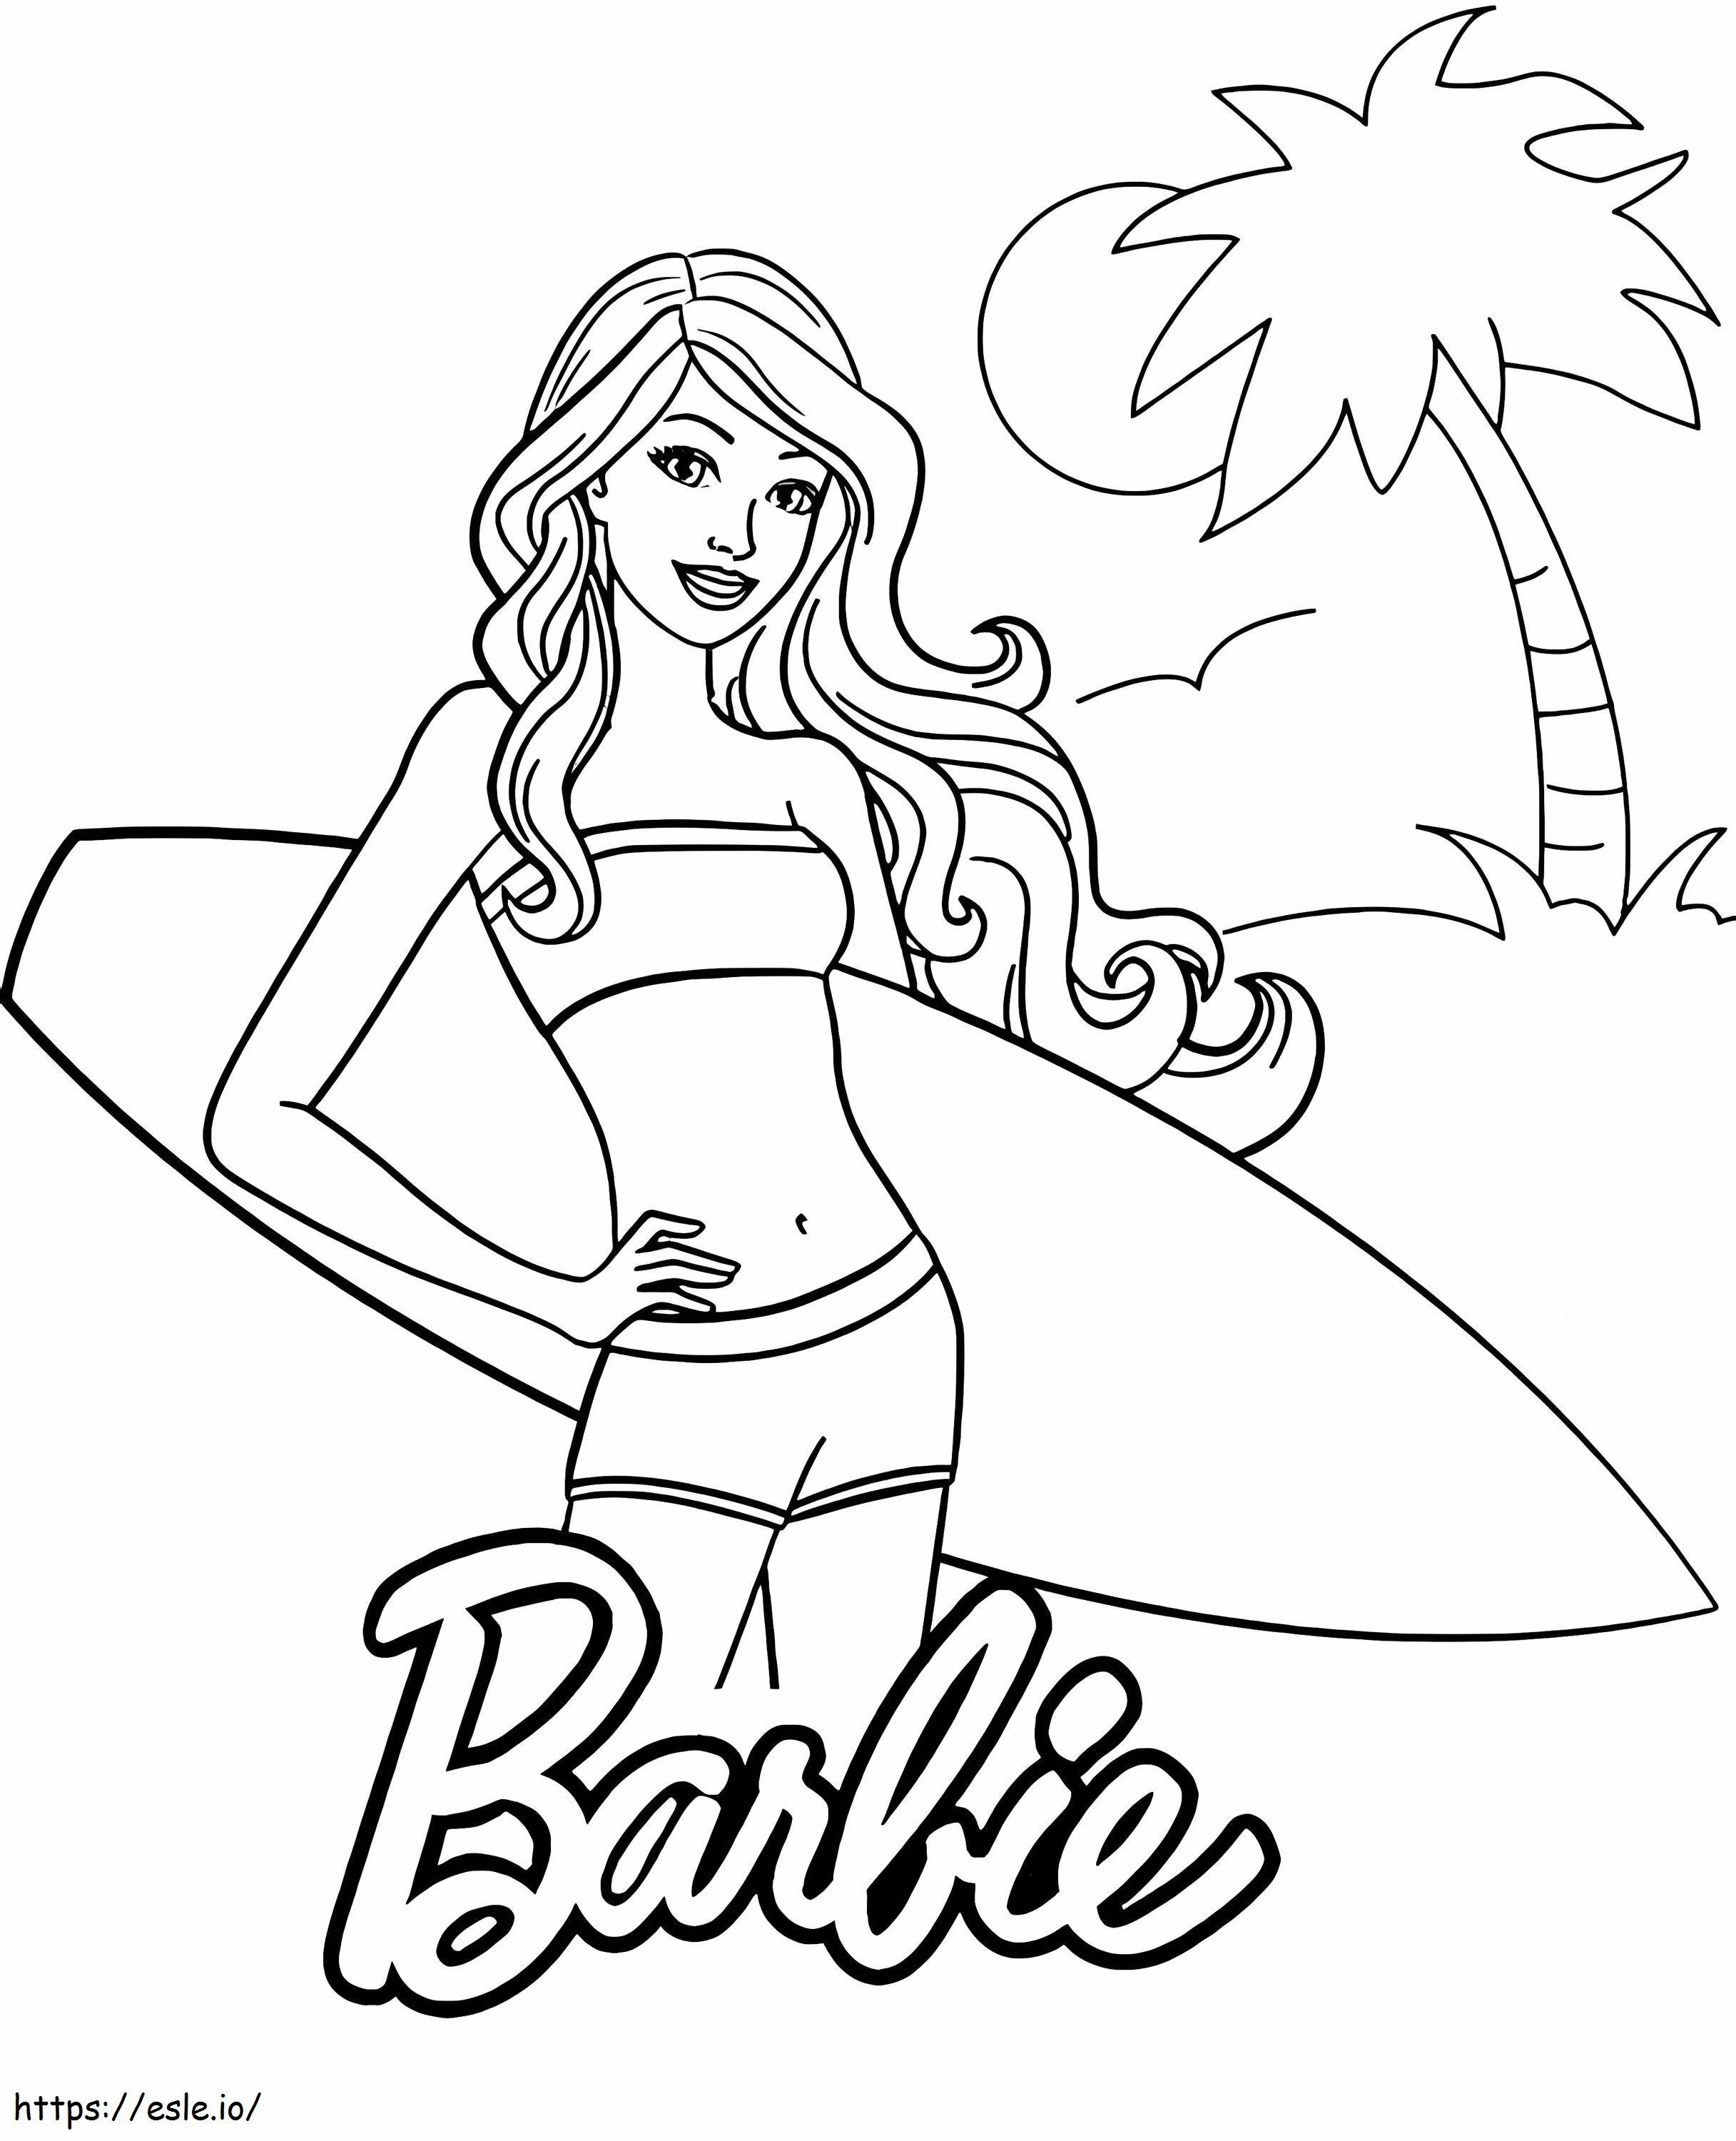 Barbie Tatilde boyama